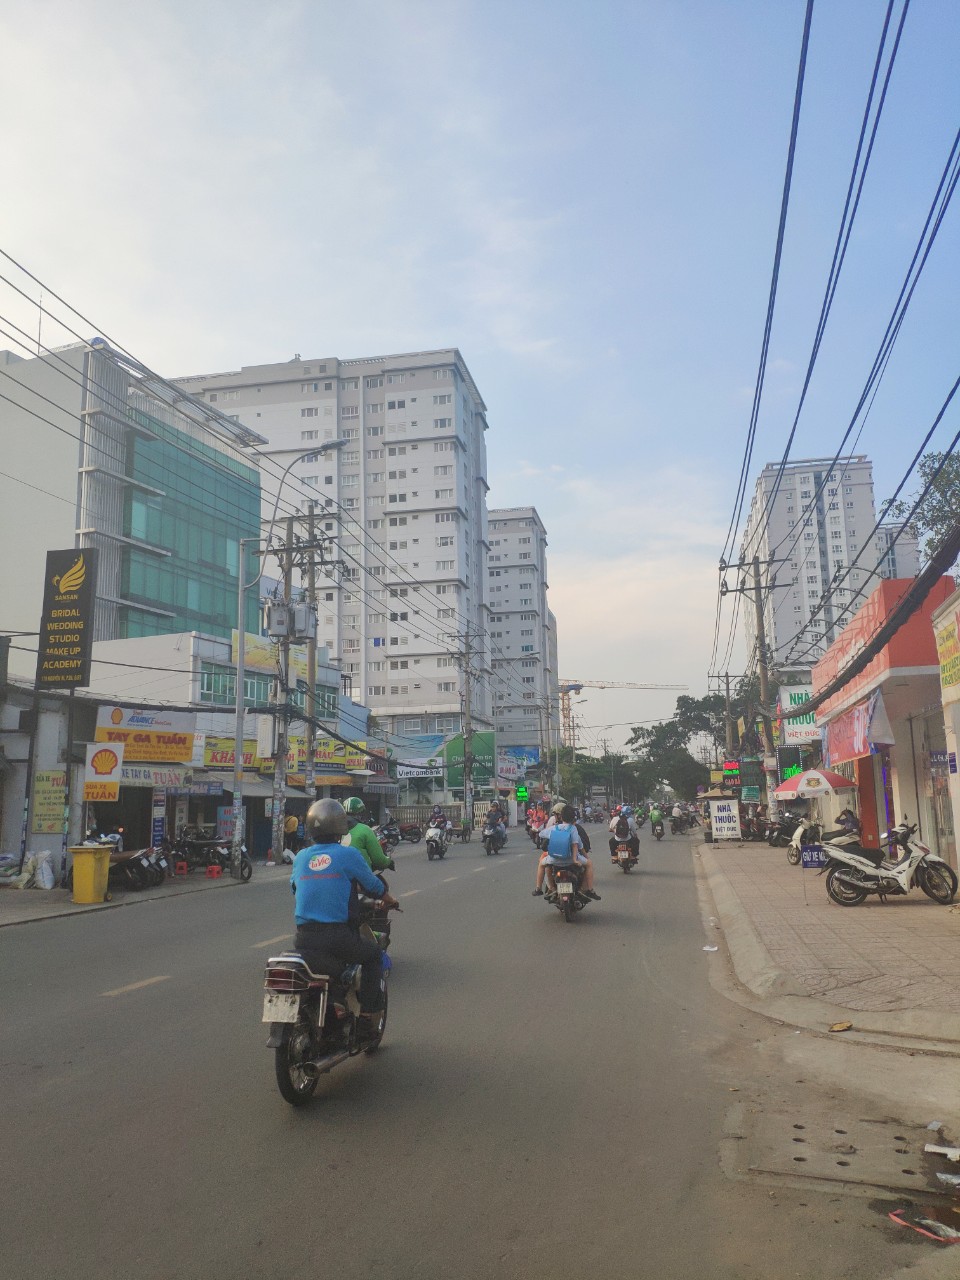 Bán nhà mới đường Nguyễn Xí, P. 26, quận Bình Thạnh, 1 trệt 2 lầu, giá 5.8 tỷ, liên hệ: 0348210144